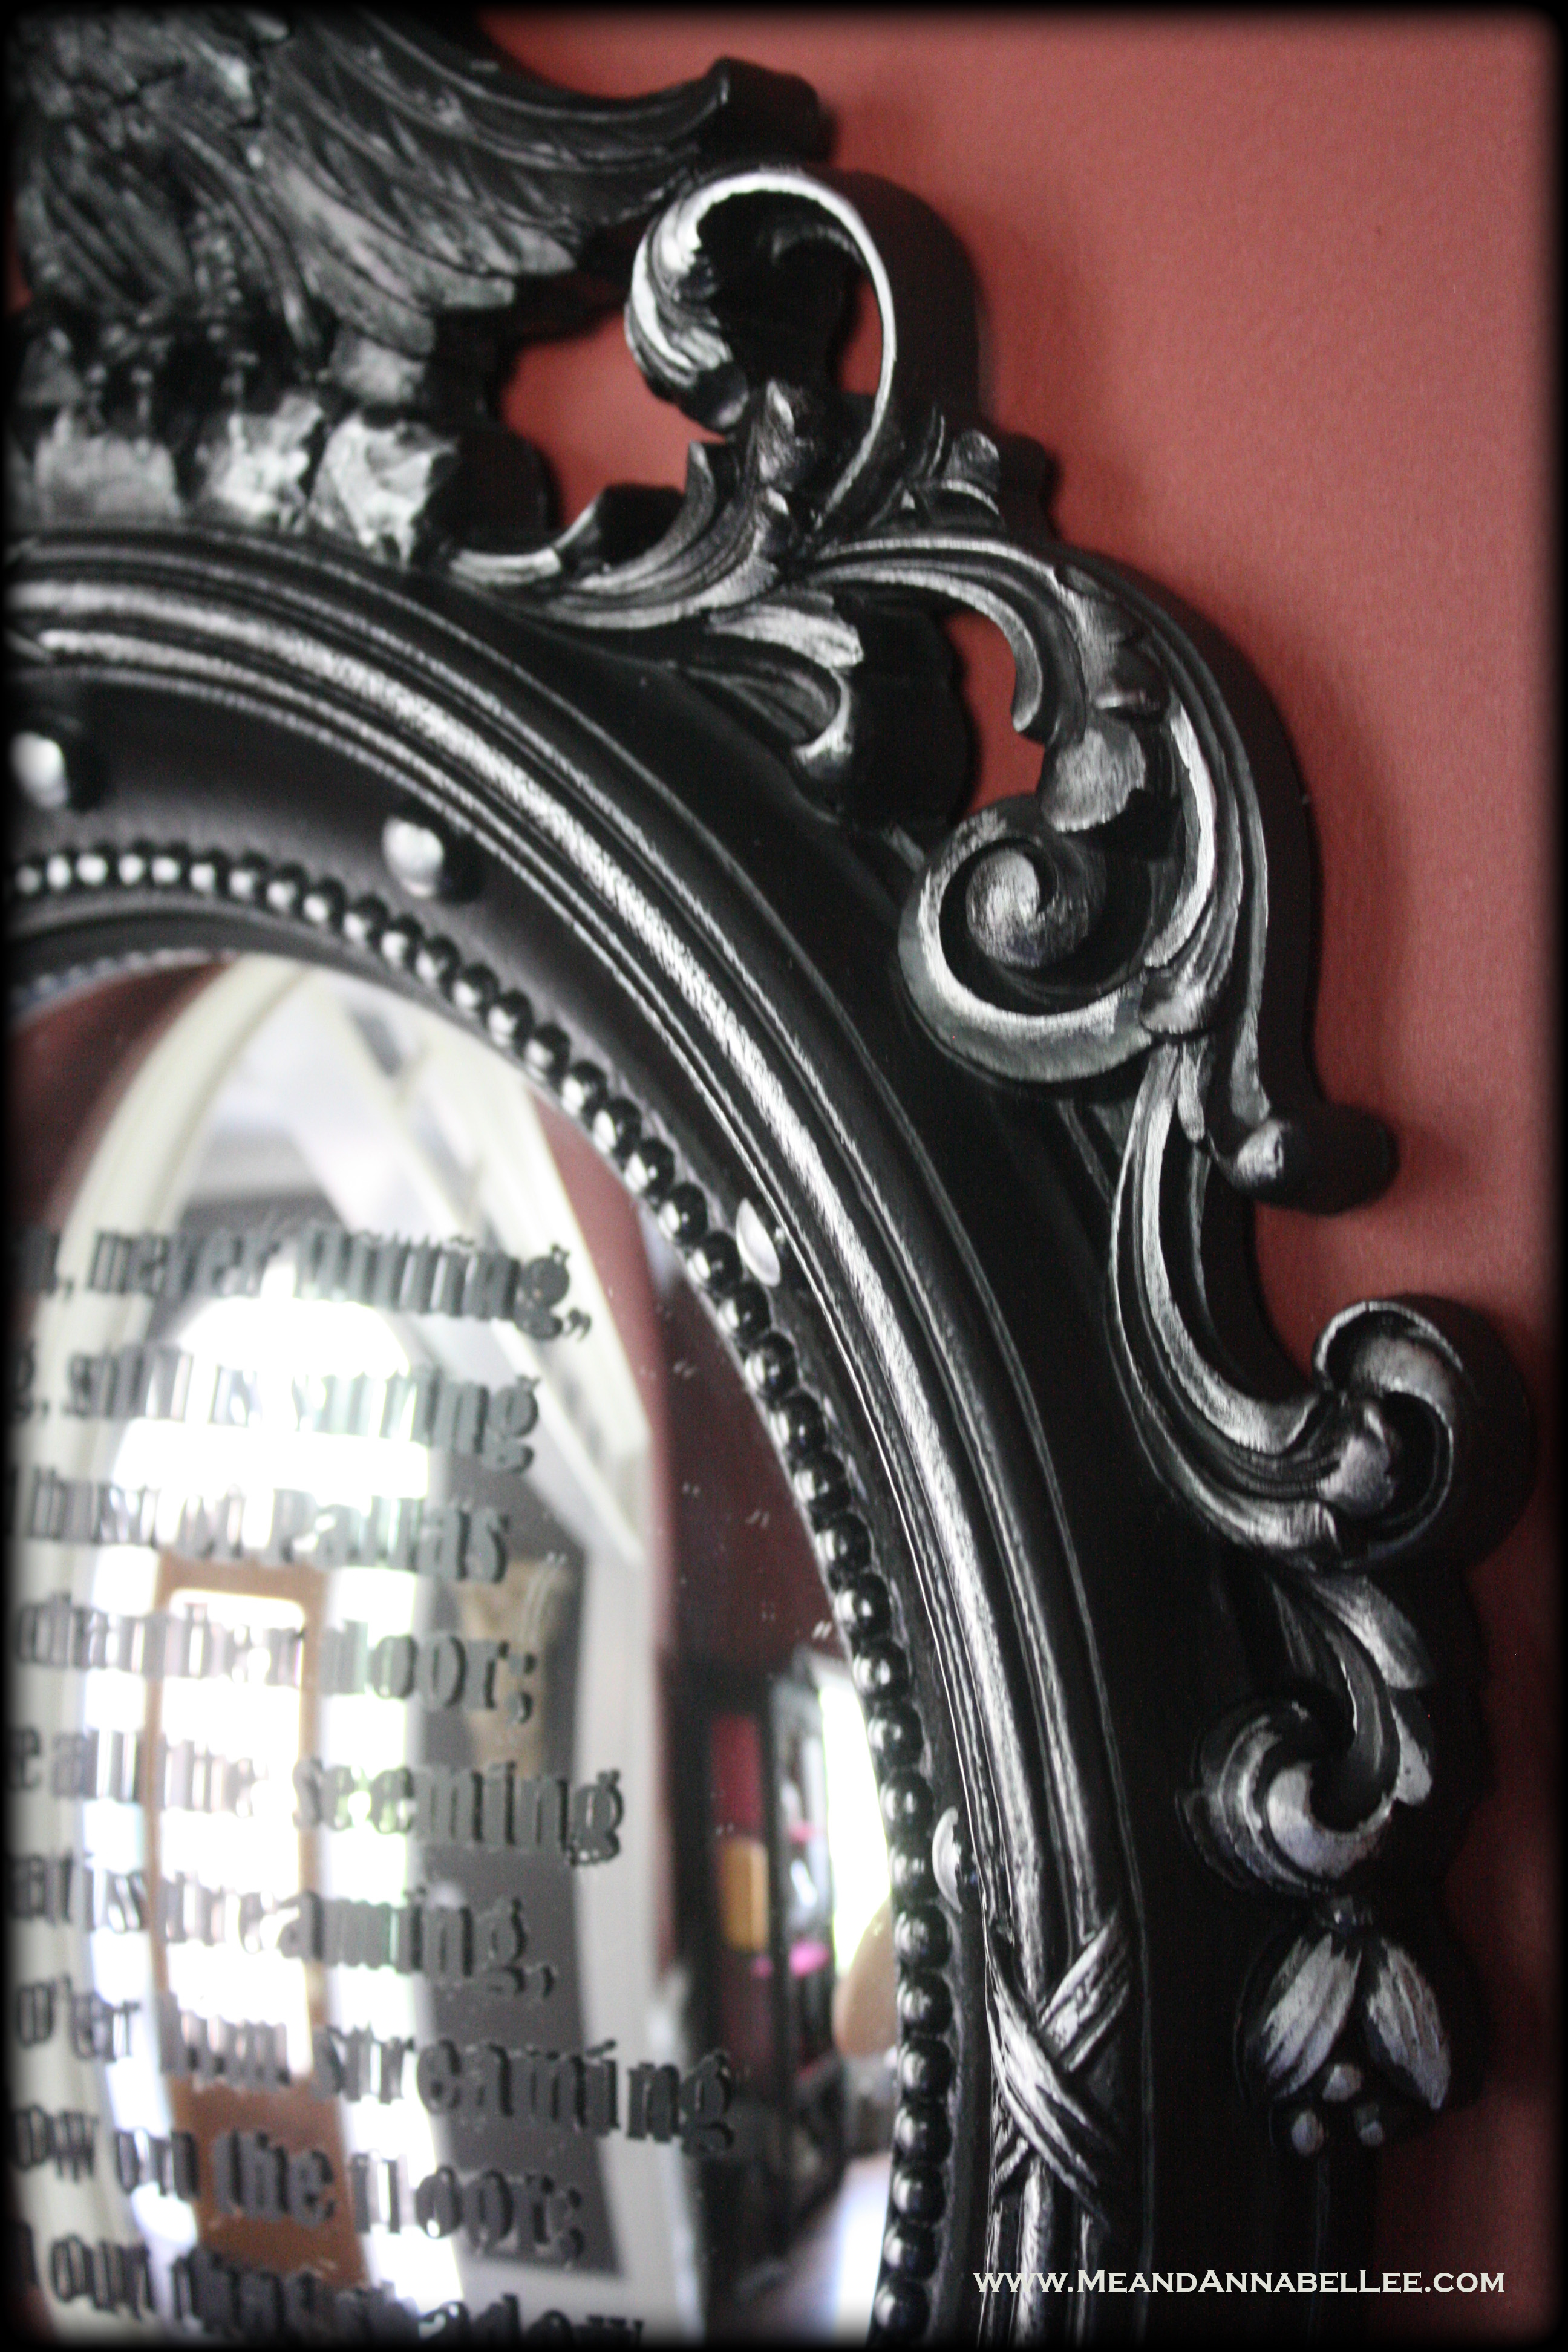 Edgar Allan Poe Wall Art | Gothic Literature |Cricut Vinyl Lettering Tutorial | Silver Leaf Rub n Buff | Goth Home Decor | www.MeandAnnabelLee.com